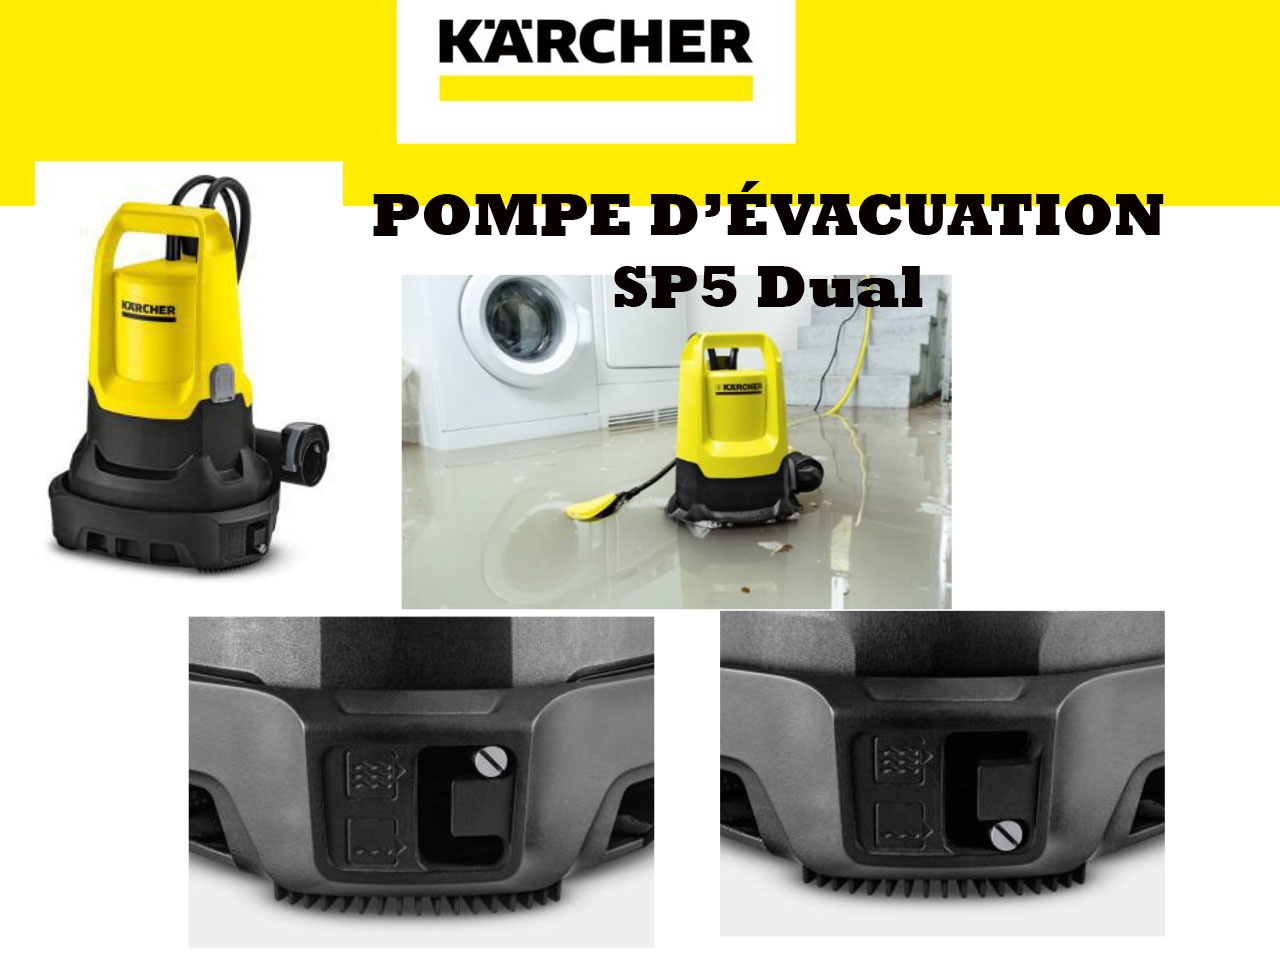 Kärcher lance la SP5 Dual, une pompe d'évacuation 2 en 1 - Univers